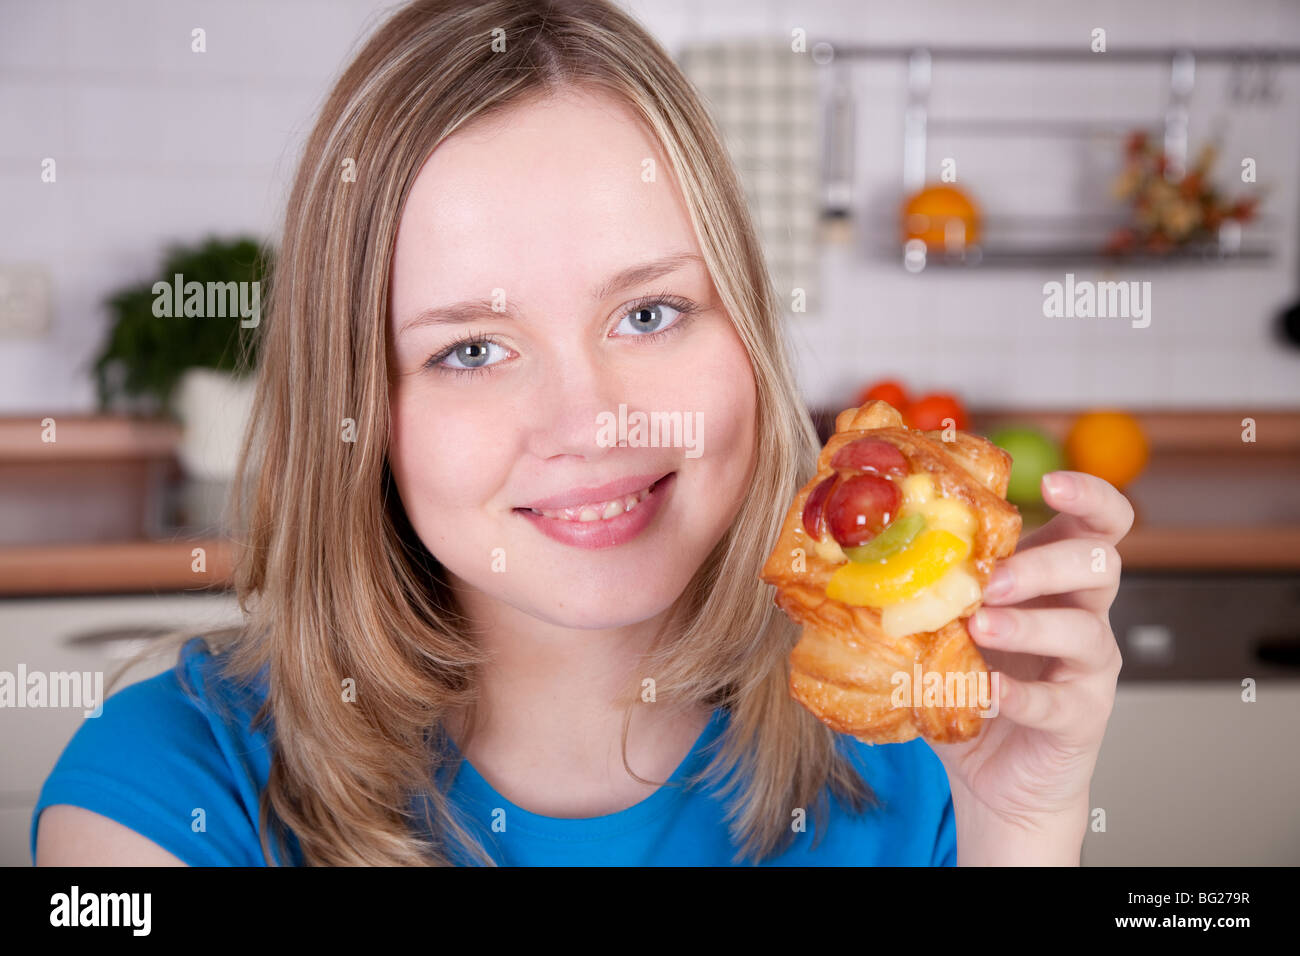 Bella donna sorridente trattiene il dolce bun decorate con frutti in cucina interna. Foto Stock